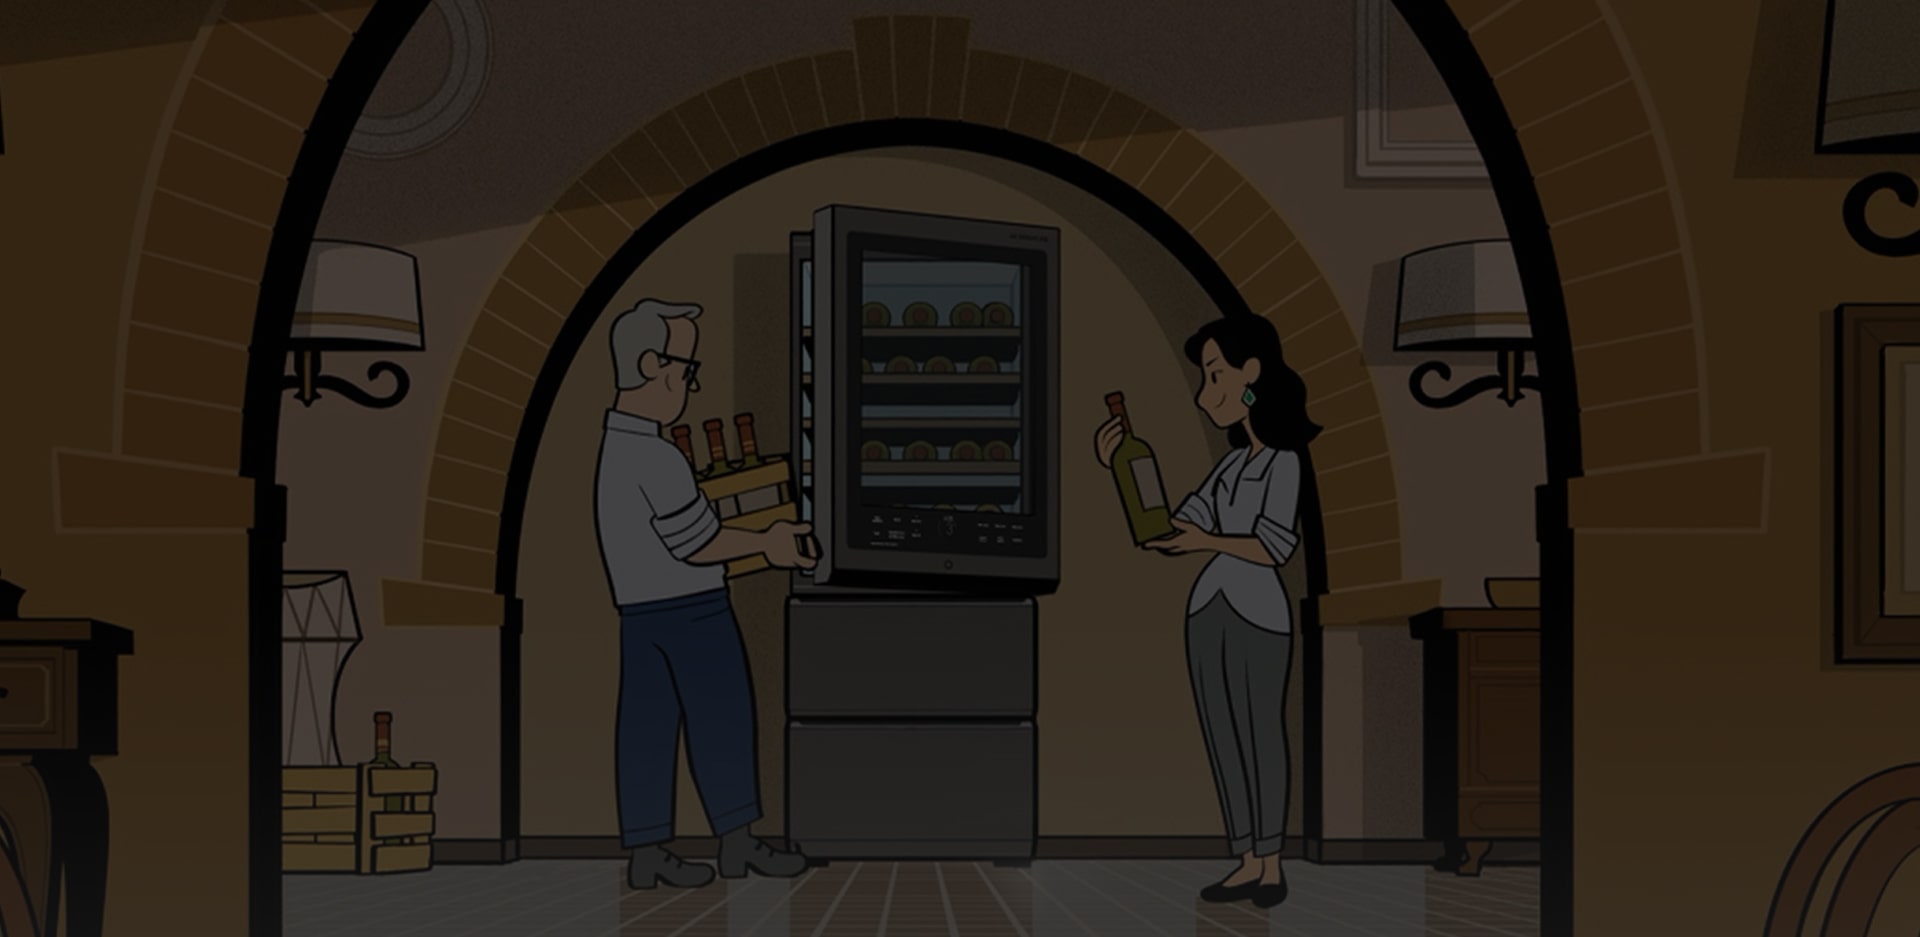 Иллюстрация функции автоматического открывания двери винного шкафа LG SIGNATURE — с участием Джеймса Саклинга и его жены.